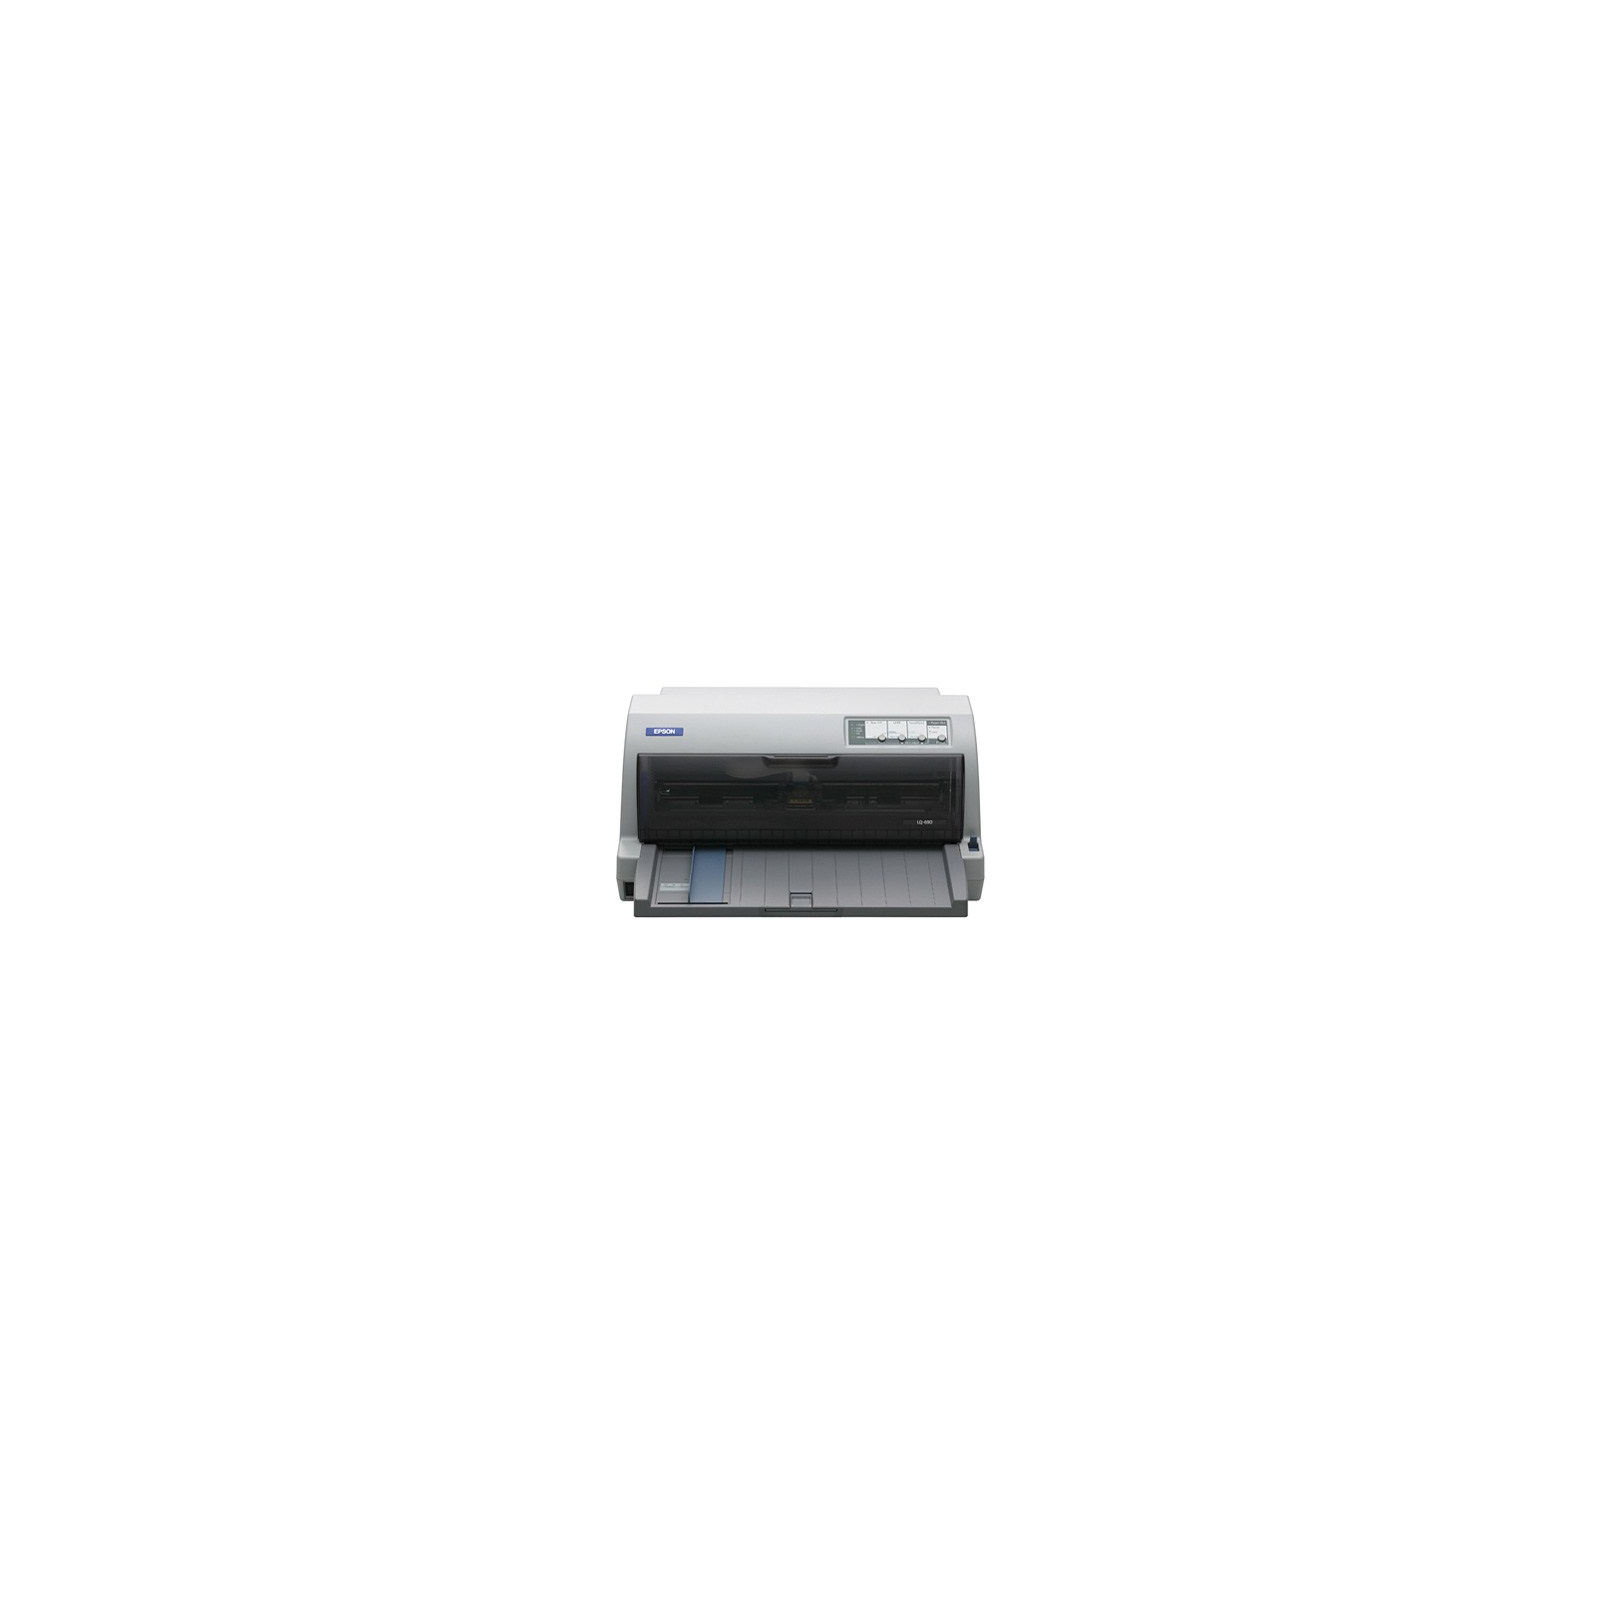 Матричный принтер LQ-690 Epson (C11CA13041)